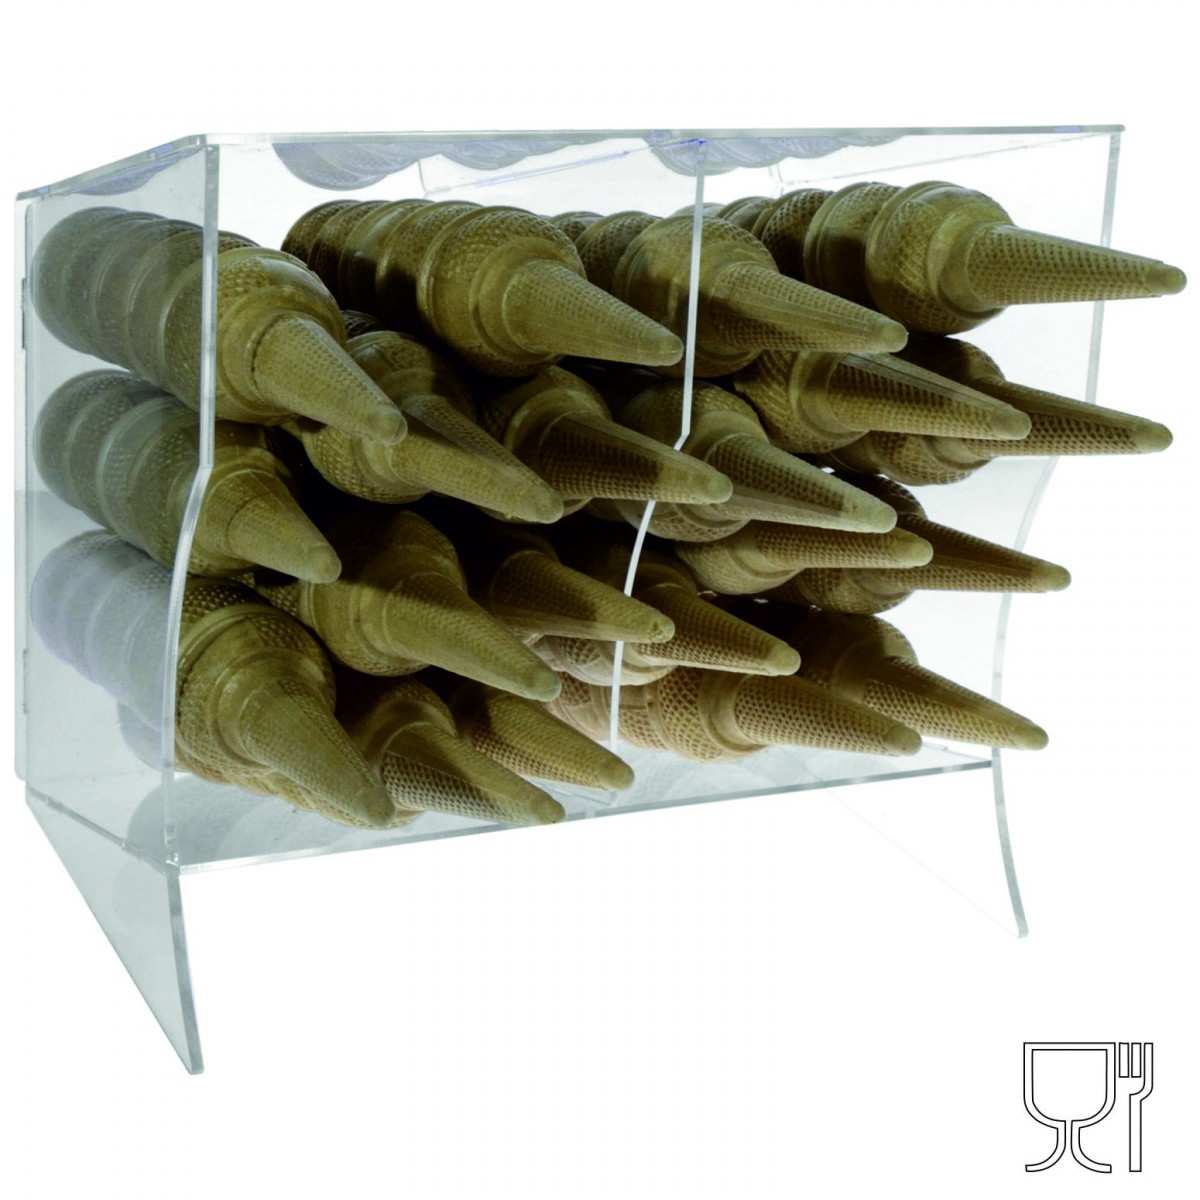 Expositor para conos de helado en plexiglás transparente horizontal con 2 compartimentos